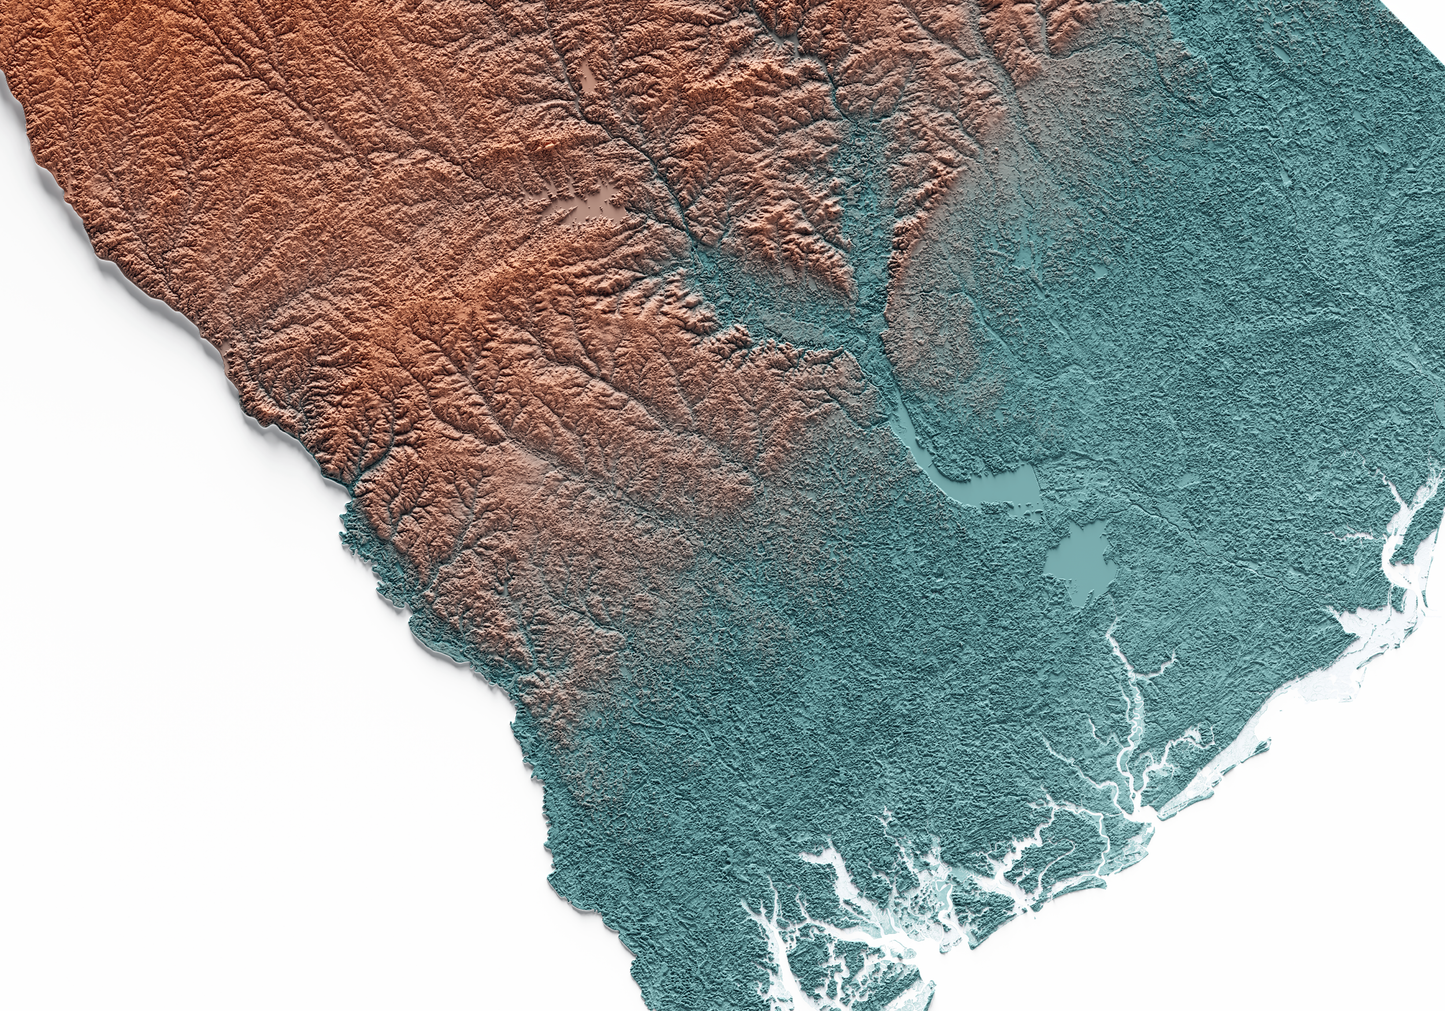 CAROLINA DEL SUR. Mapa de relieve con contraste.